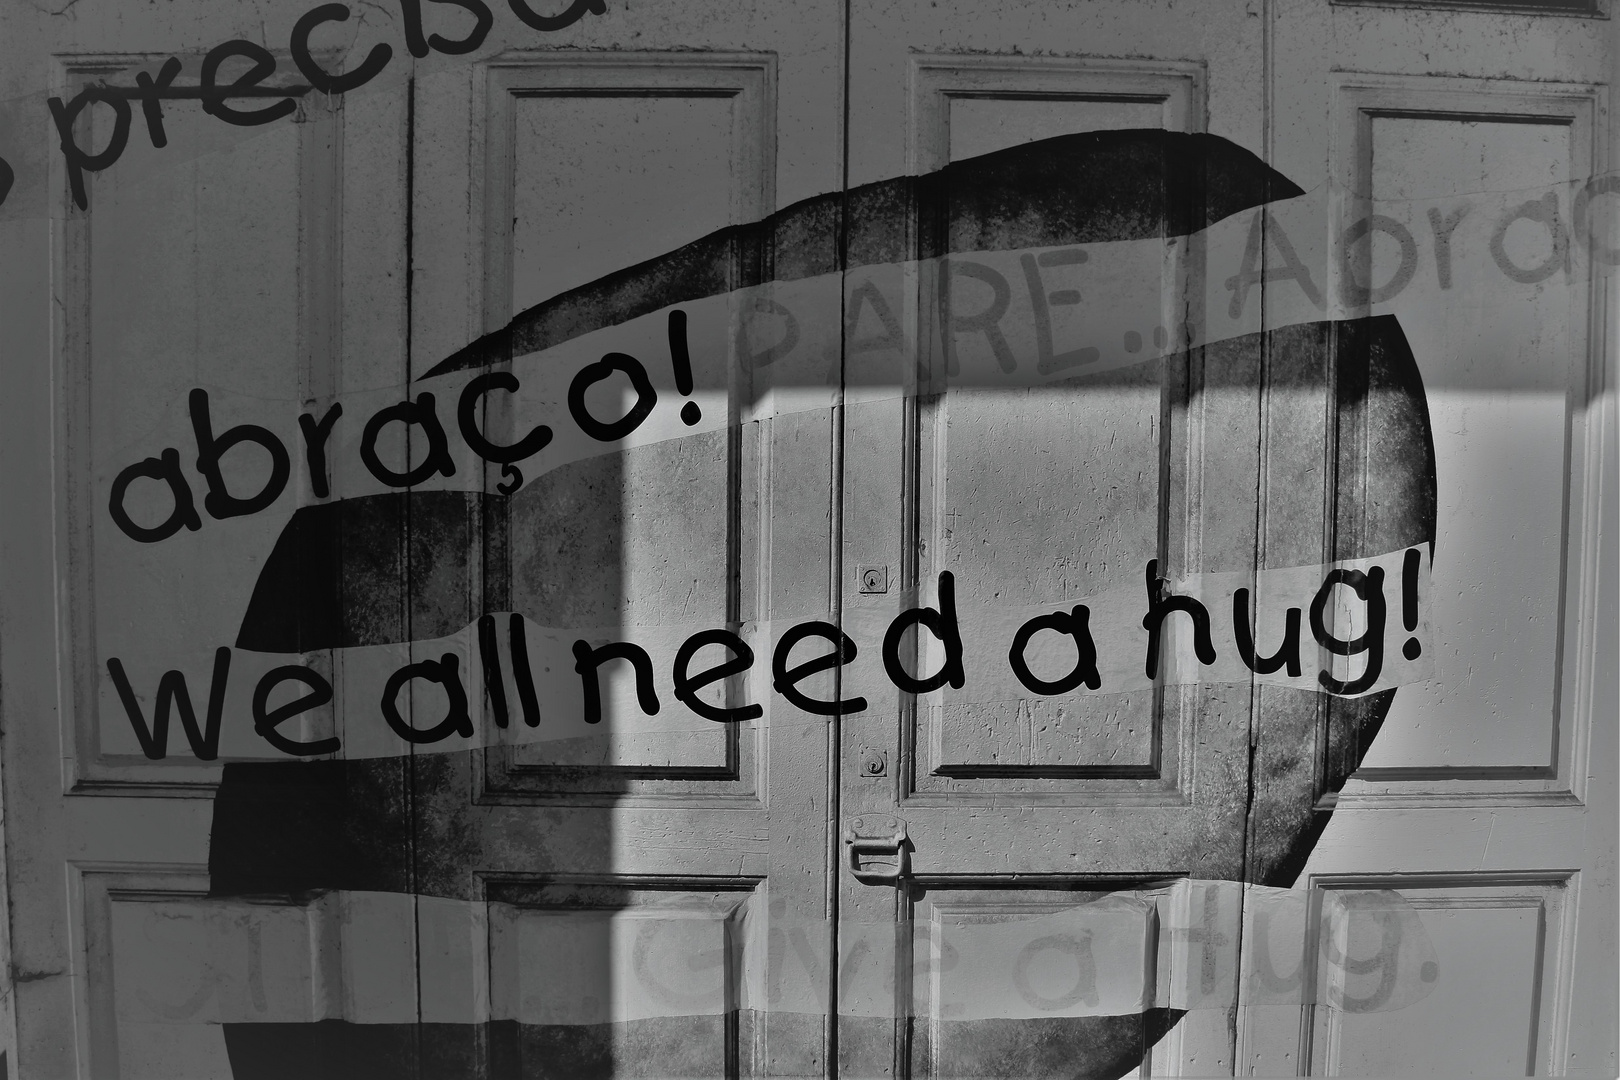 "we all need a hug"